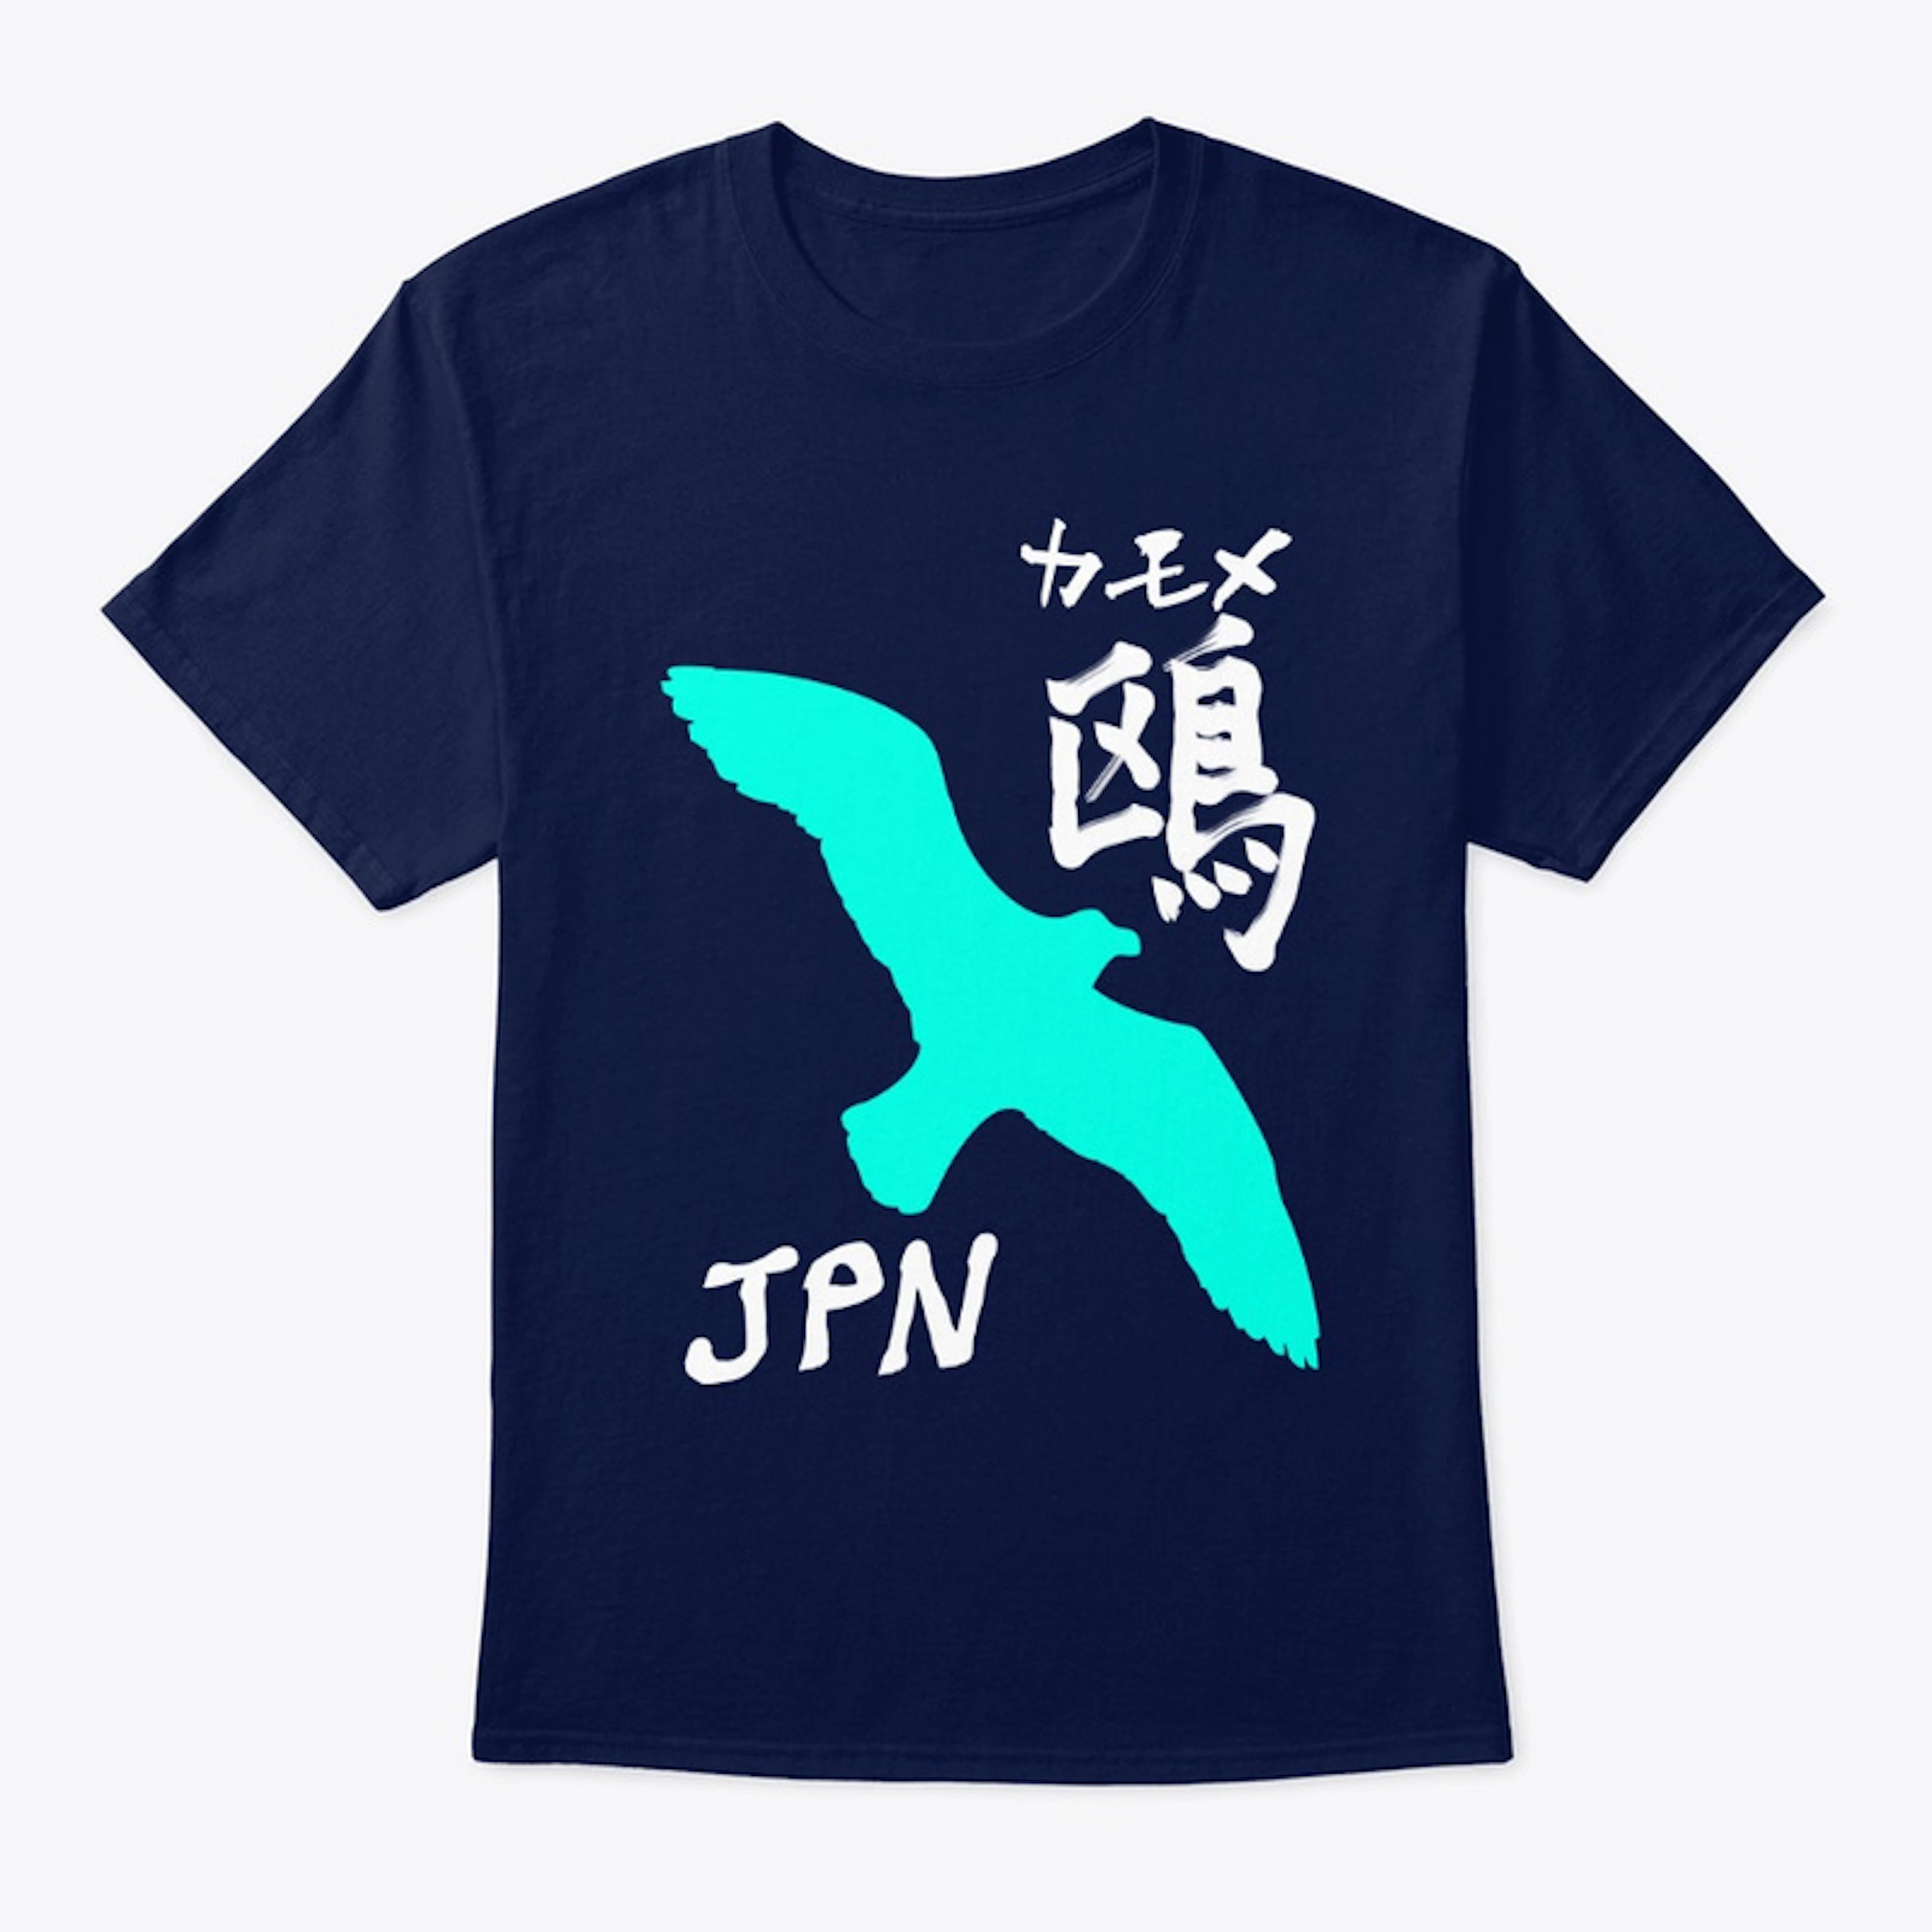 鴎 "Seagull" T-shirts